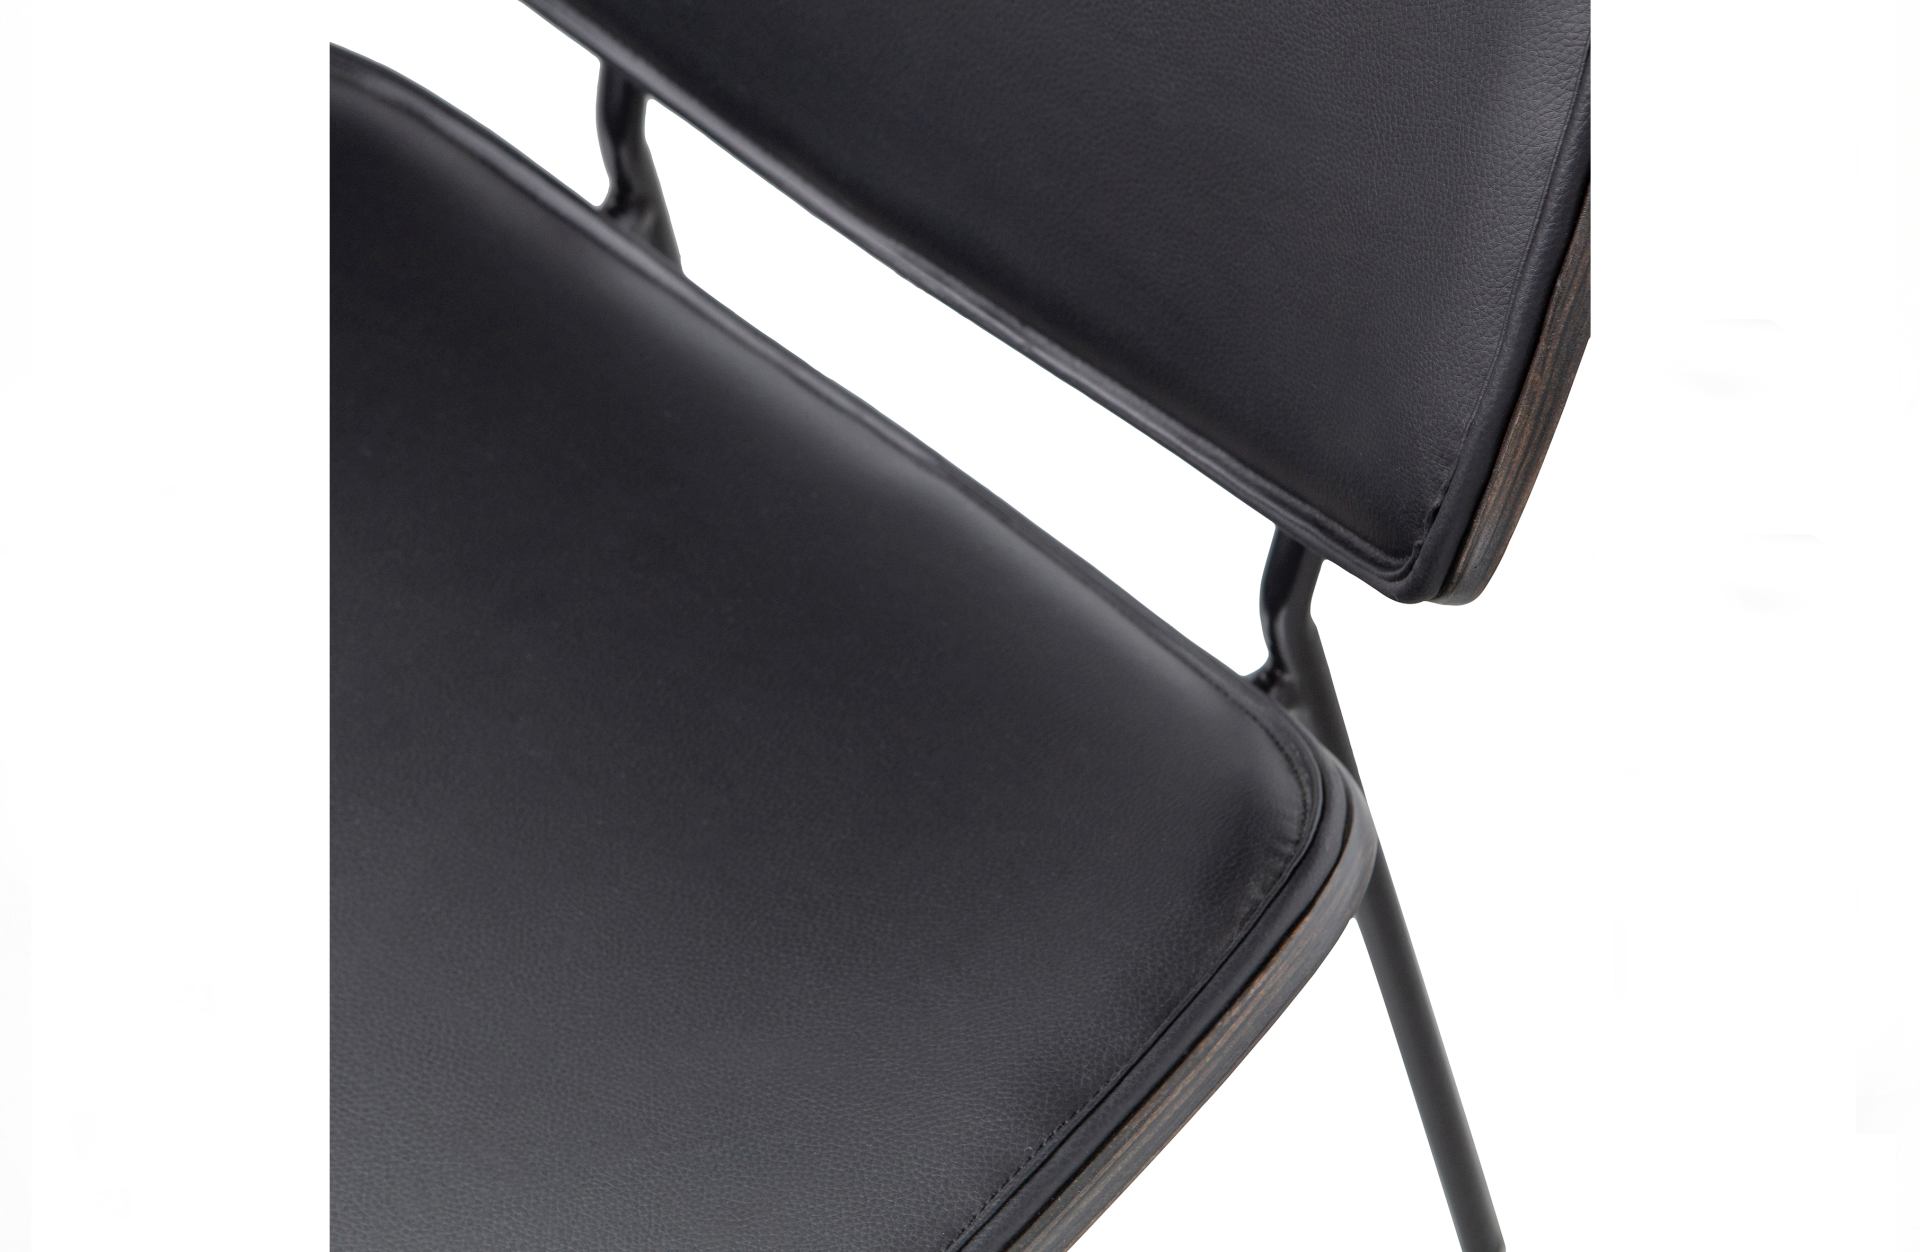 Der Esszimmerstuhl Close überzeugt mit seinem klassischen Design. Gefertigt wurde er aus Kunstleder, welches einen schwarzen Farbton besitzt. Das Gestell ist aus Metall und hat eine schwarze Farbe. Die Sitzhöhe beträgt 49 cm.